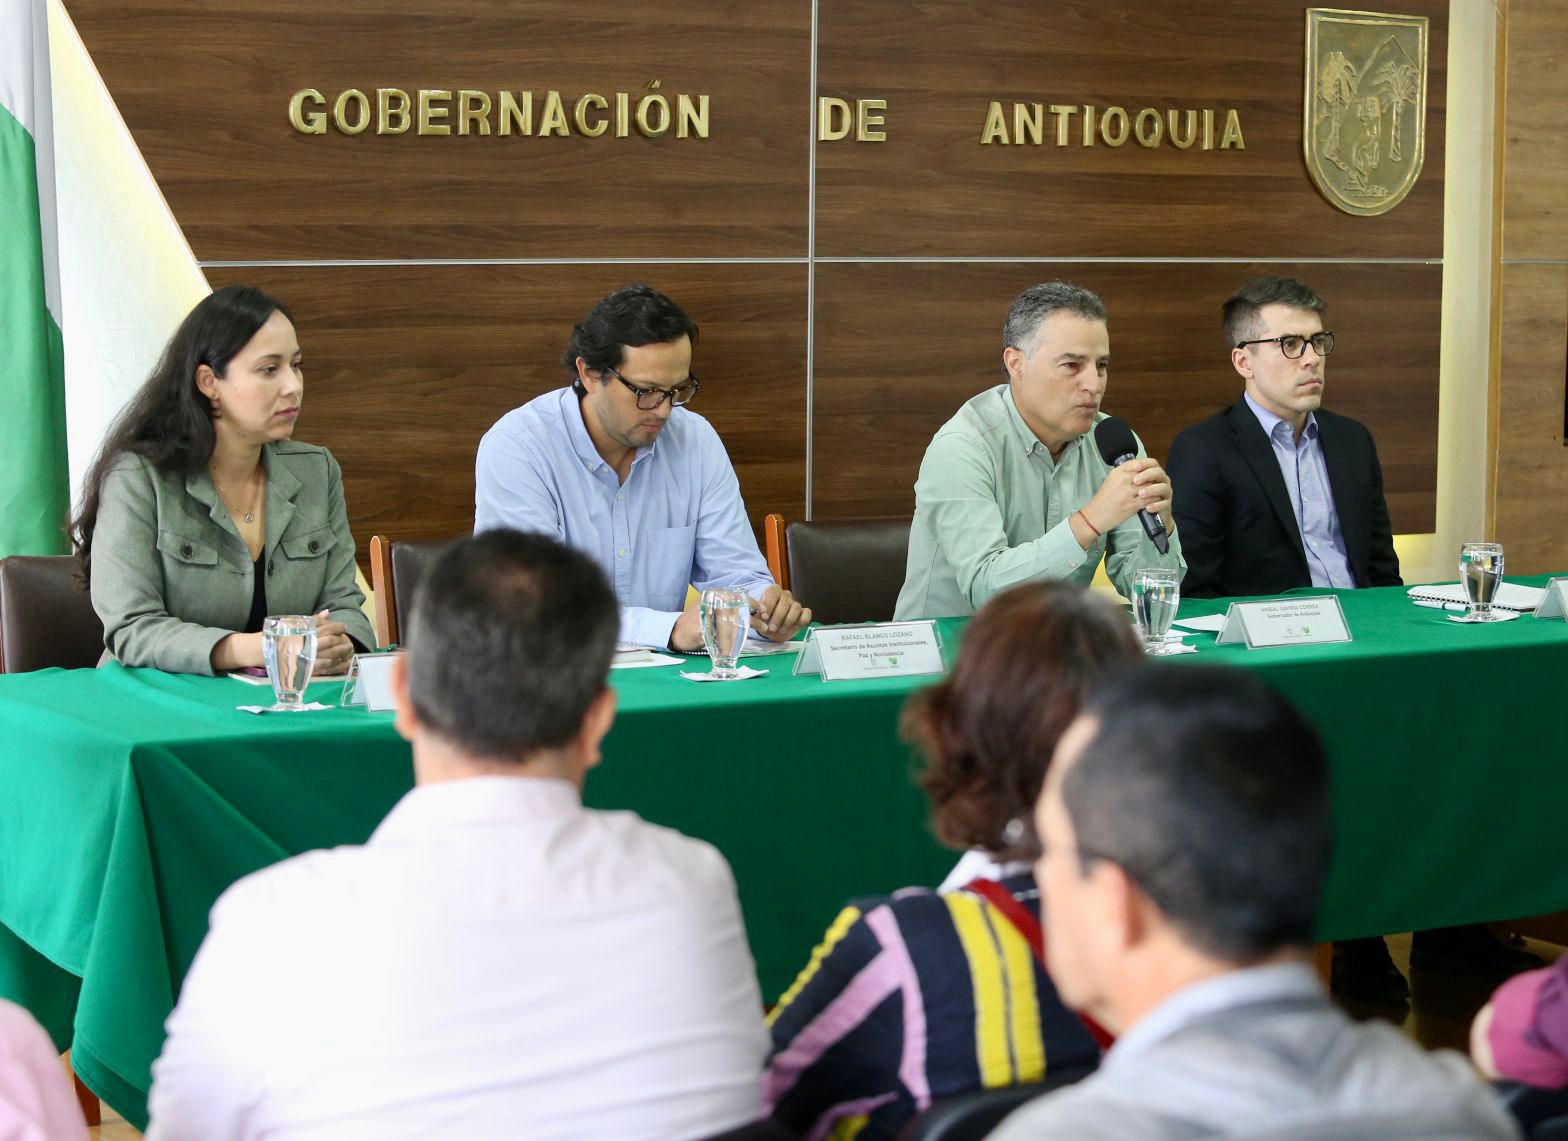 Acoso laboral en la Gobernación de Antioquia fue denunciado por el sindicato